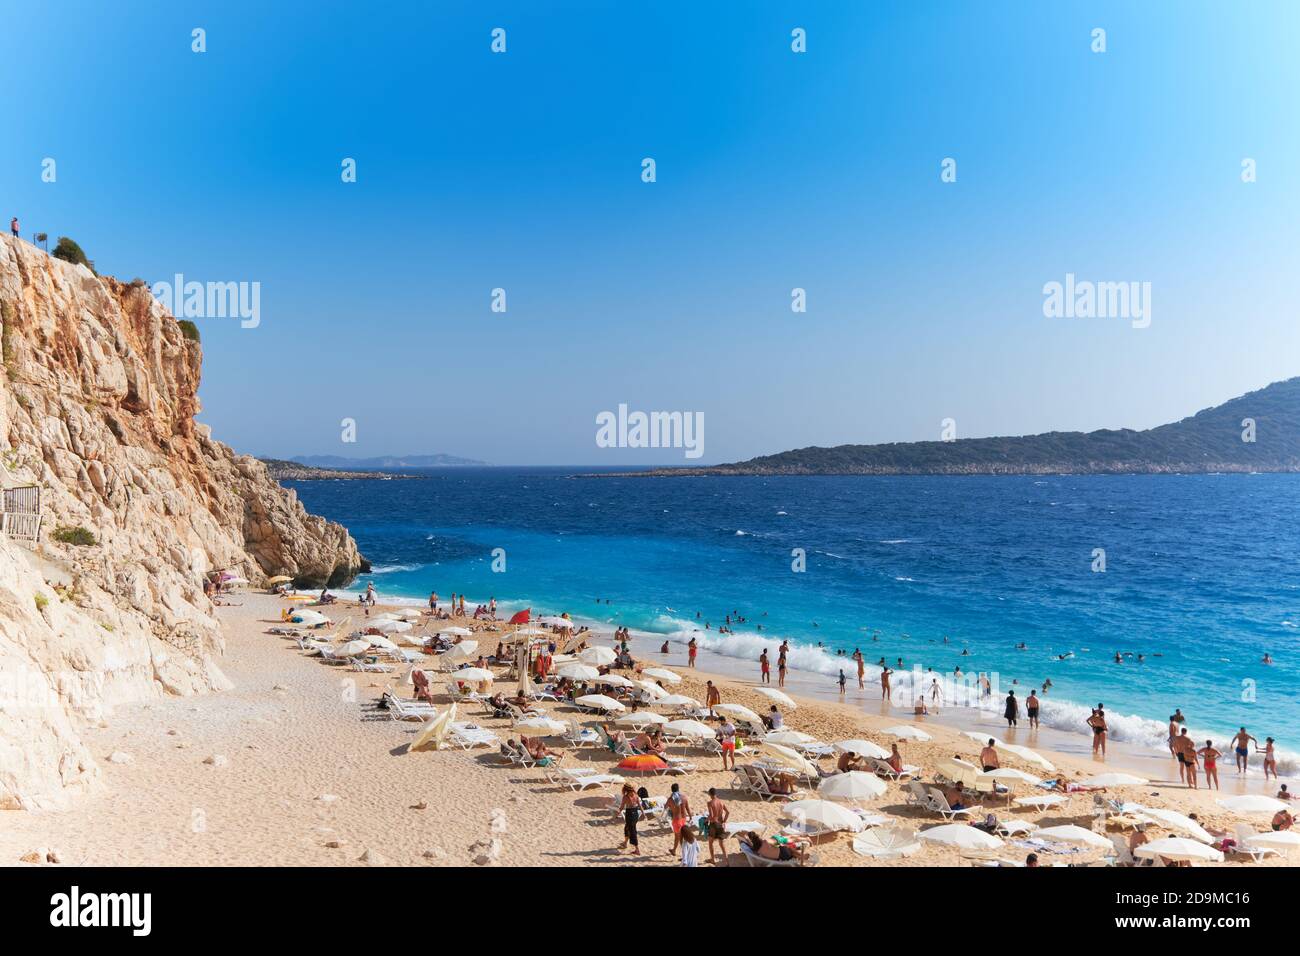 Les gens nagent et se baignent au soleil sur la plage de Kaputas, la plage turquoise, la Turquie Banque D'Images